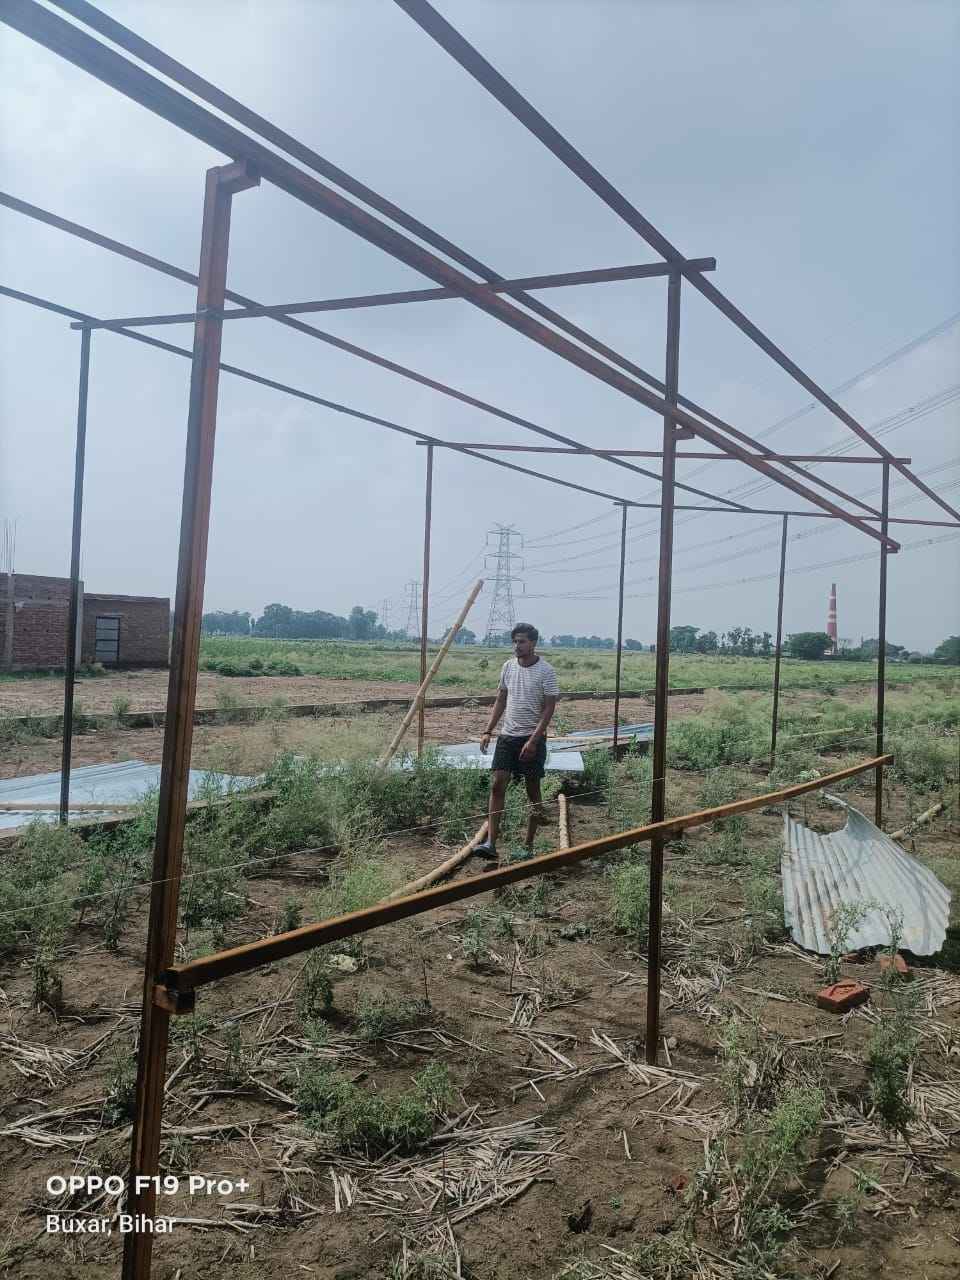 Pusat penyelamatan hewan yang dibangun dengan tongkat bambu oleh Hariom Chaubey di Bihar